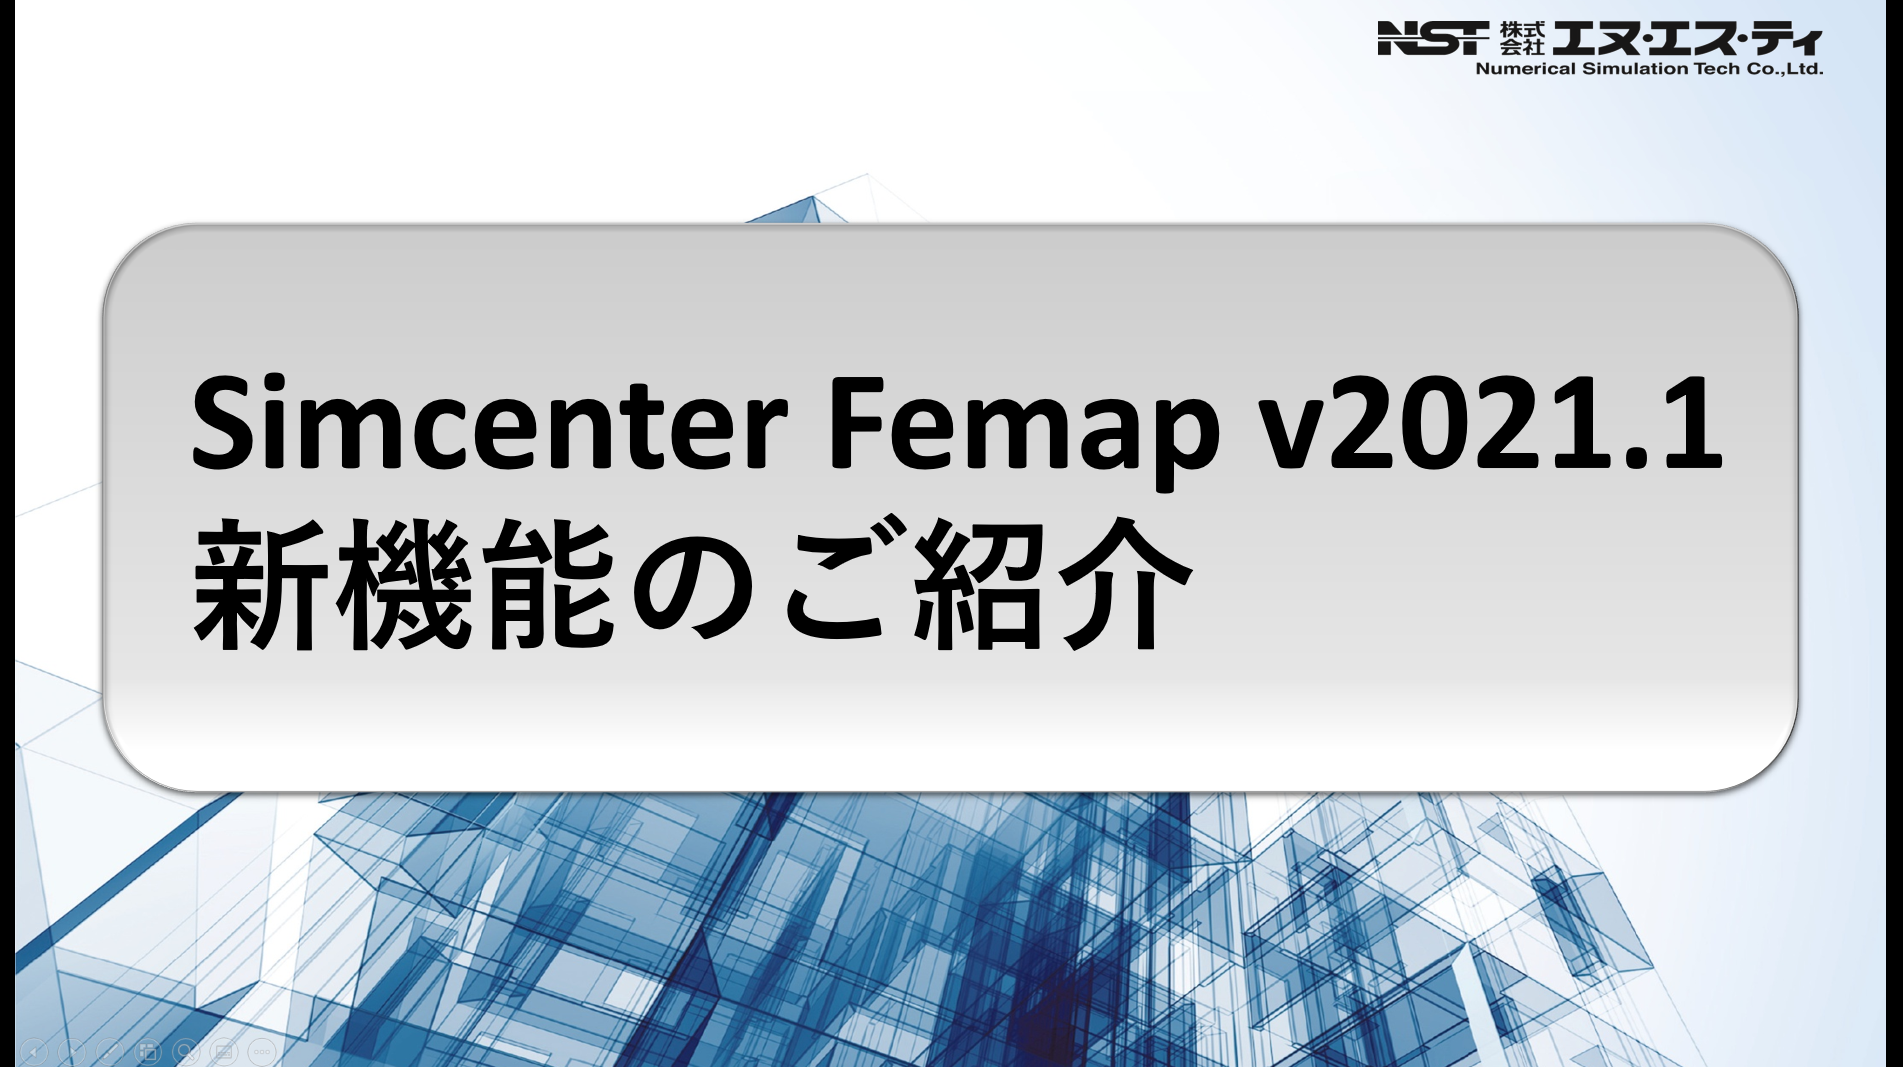 Simcenter Femap v2021.1新機能のご紹介